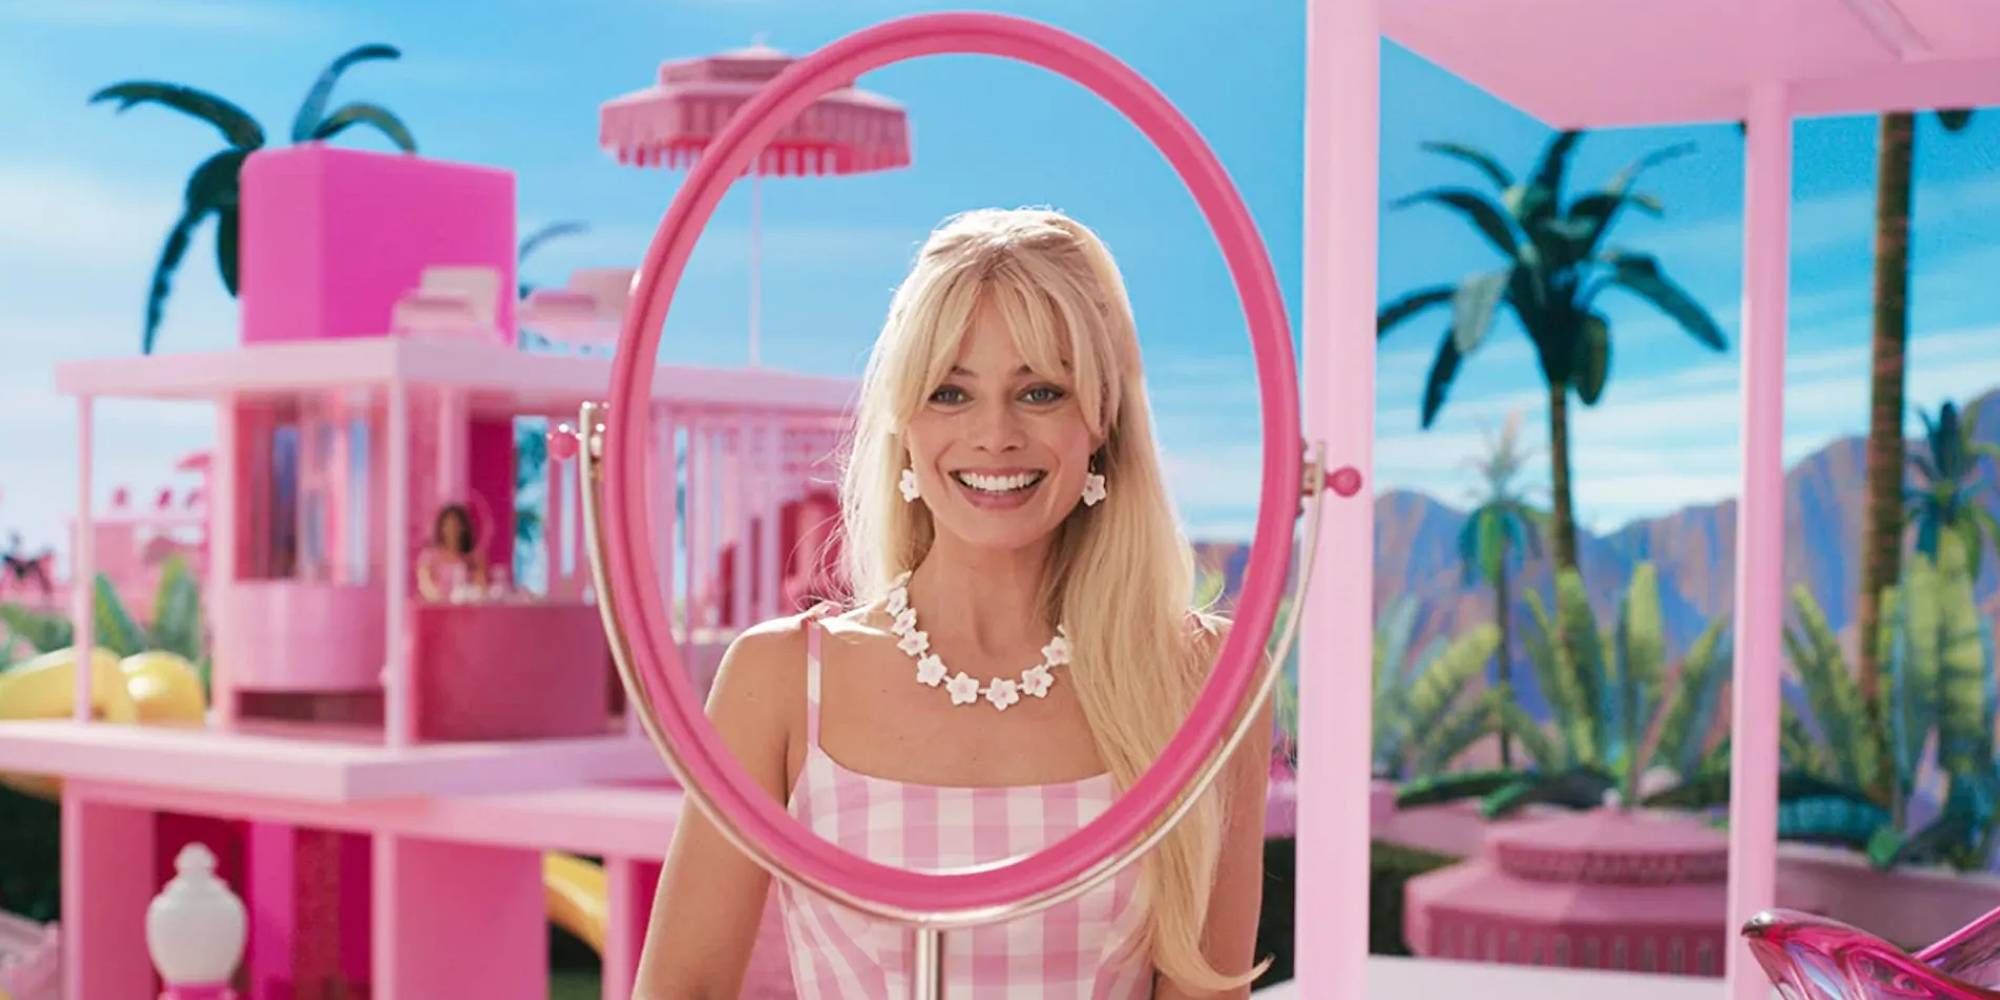 Mojo Dojo Casa House' Trend Explained, Stems From 'Barbie' Movie, Barbie